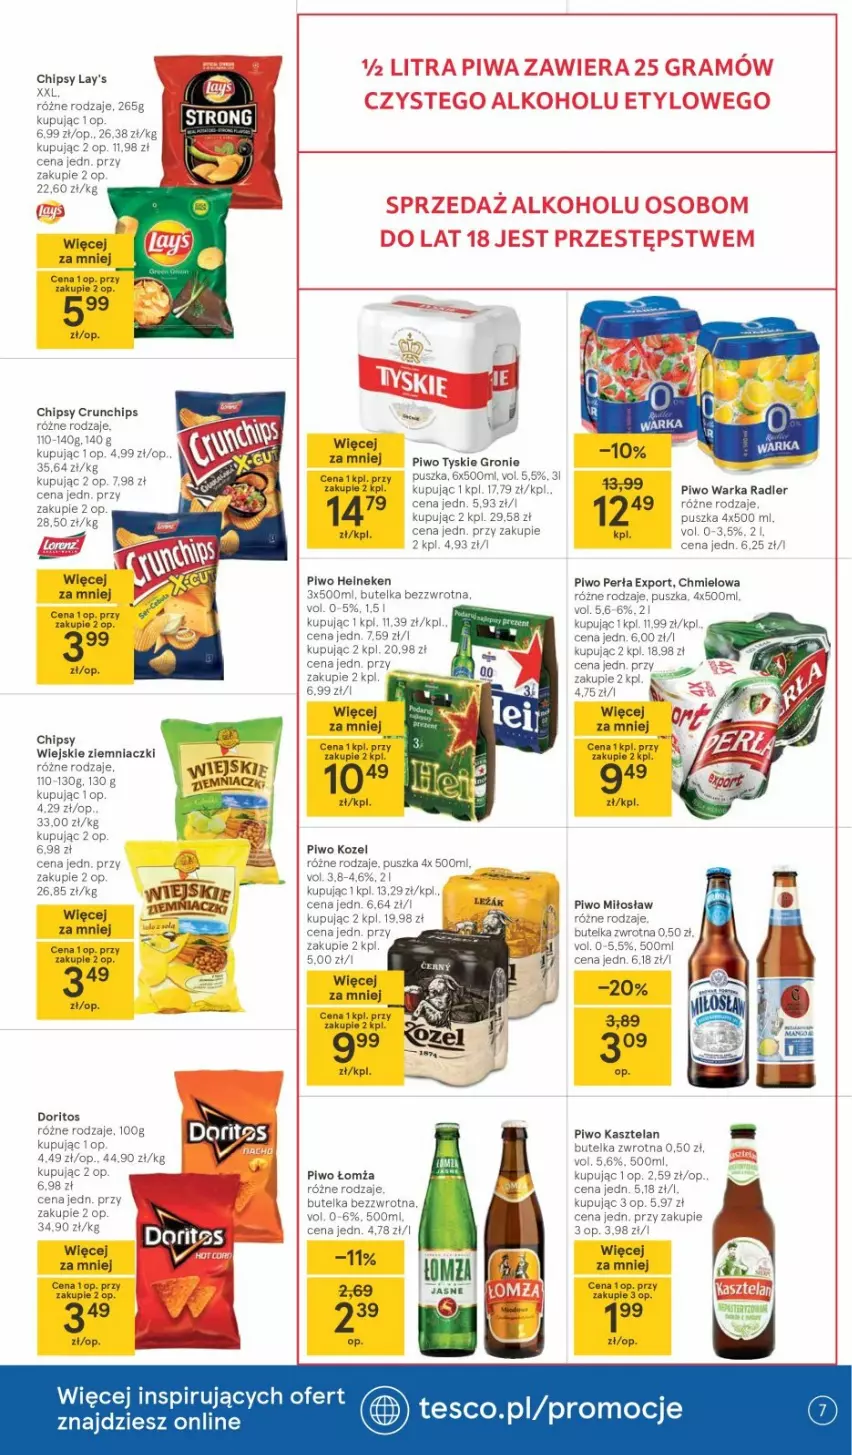 Gazetka promocyjna Tesco - Tesco gazetka - przyszły tydzień - ważna 22.04 do 28.04.2021 - strona 7 - produkty: Chipsy, Crunchips, Heineken, Kasztelan, Perła, Piwo, Por, Tyskie